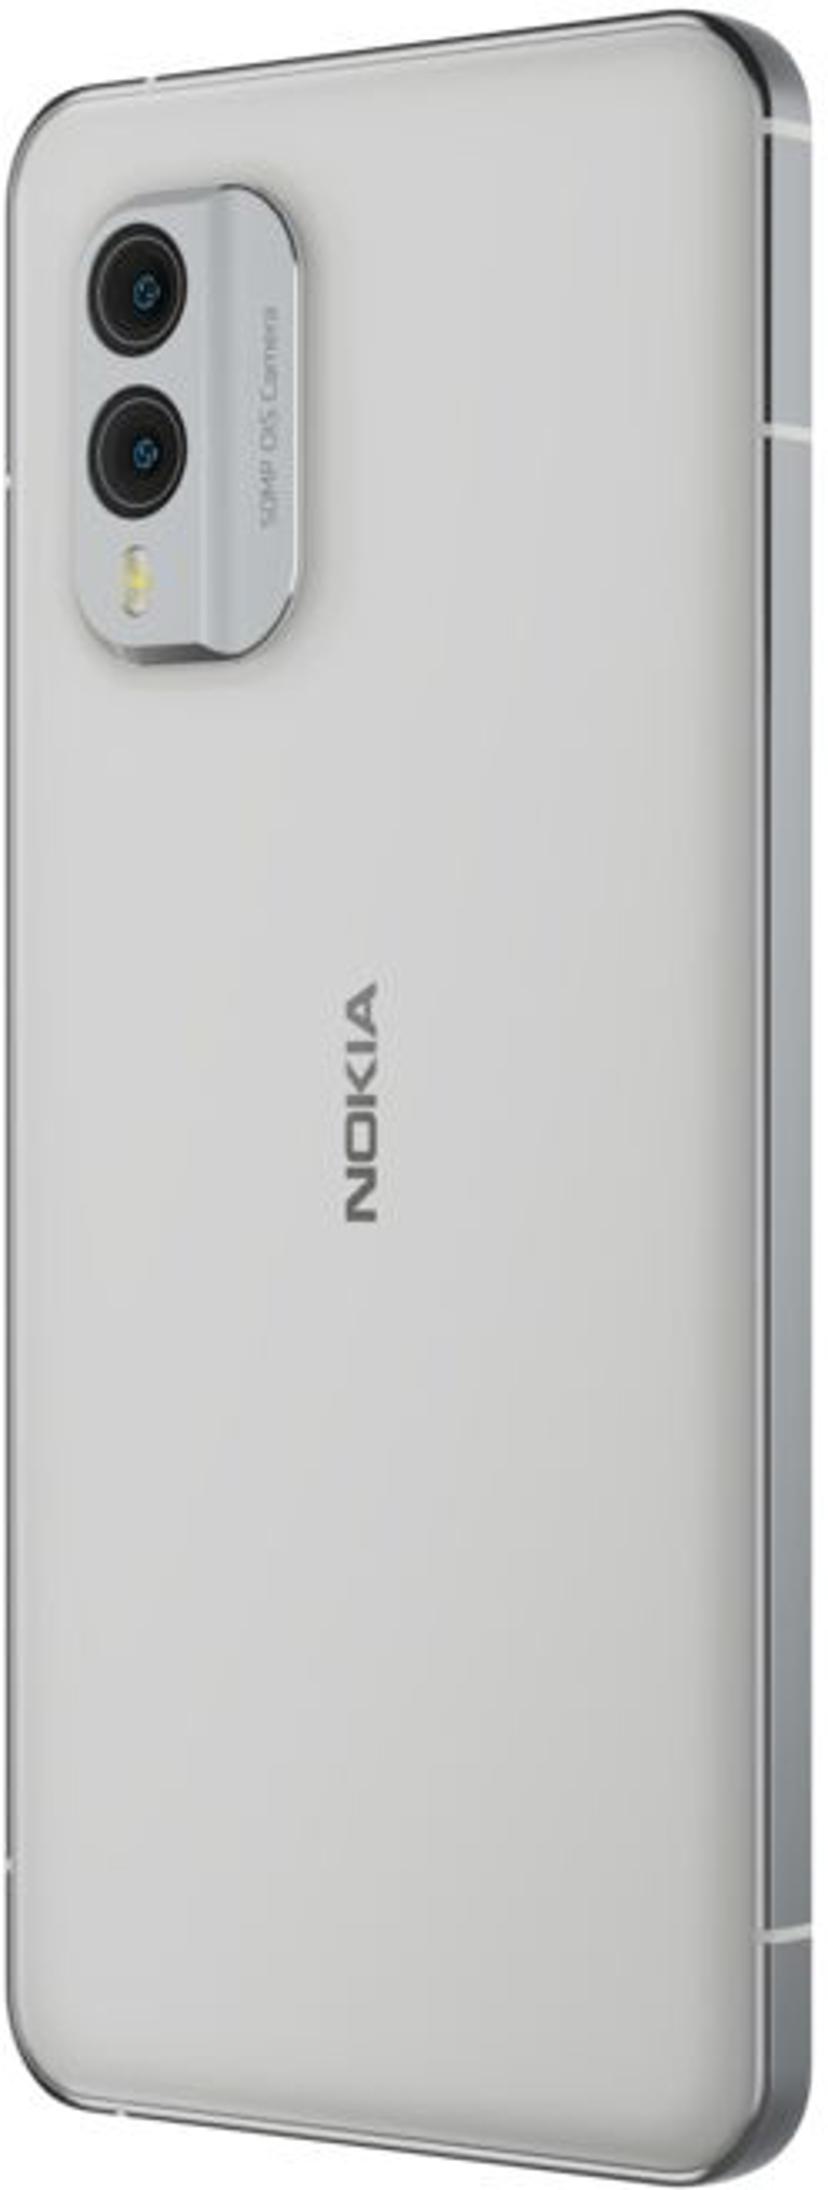 Nokia X30 256GB Kaksois-SIM Valkoinen